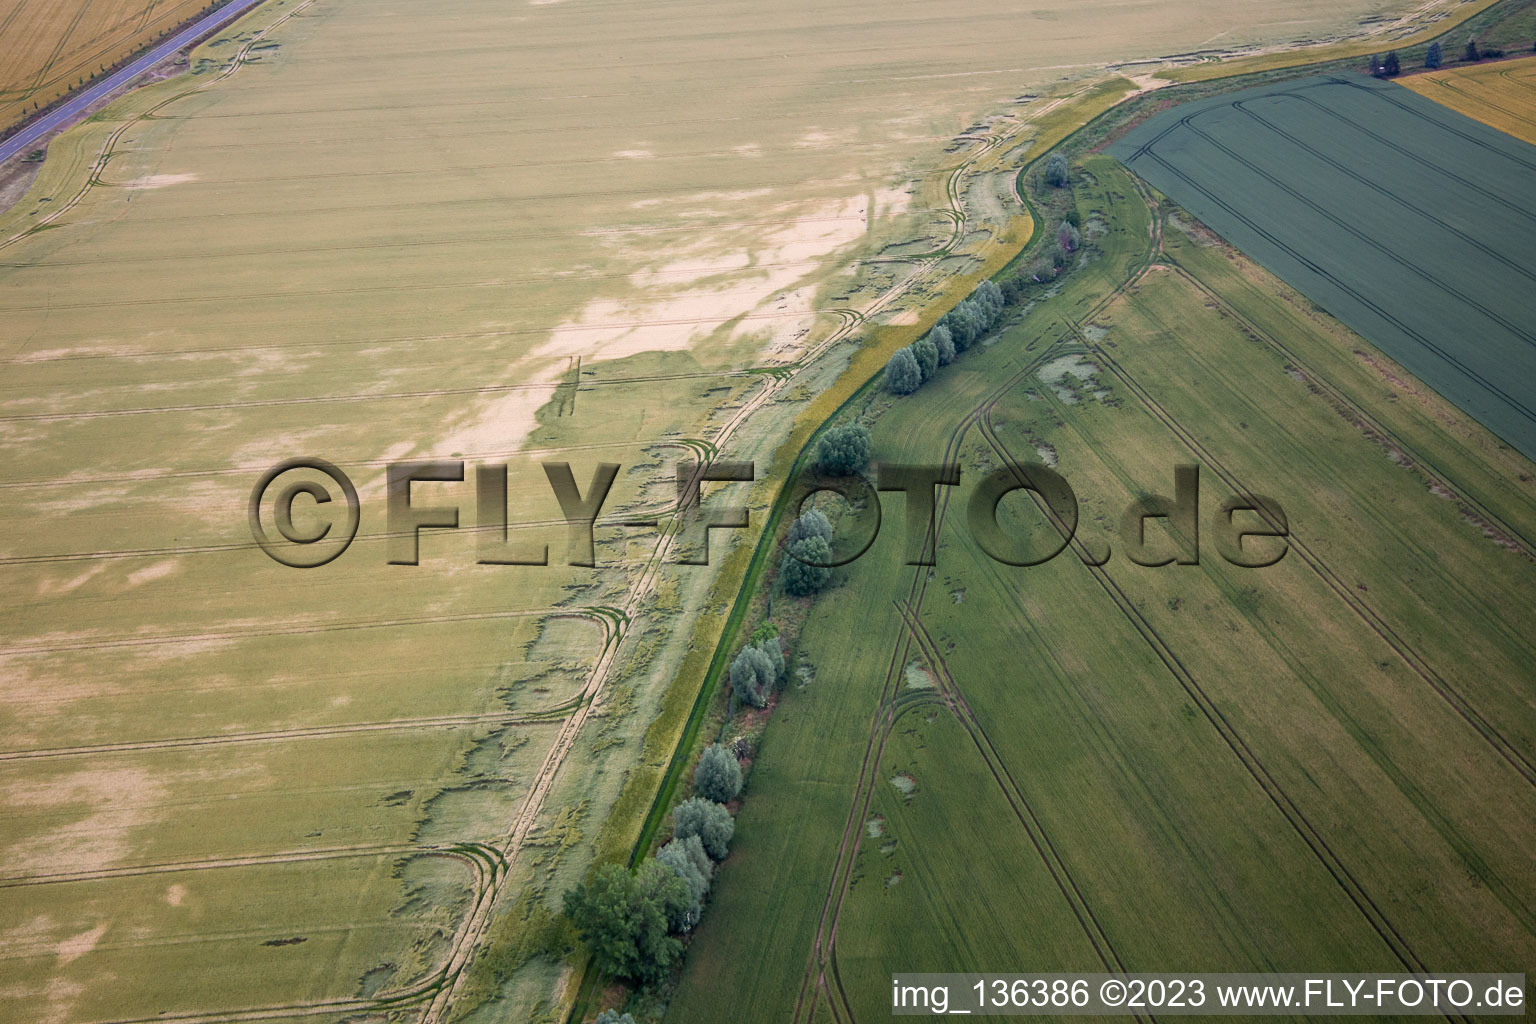 Vue aérienne de Cours du ruisseau Getel à le quartier Radisleben in Ballenstedt dans le département Saxe-Anhalt, Allemagne